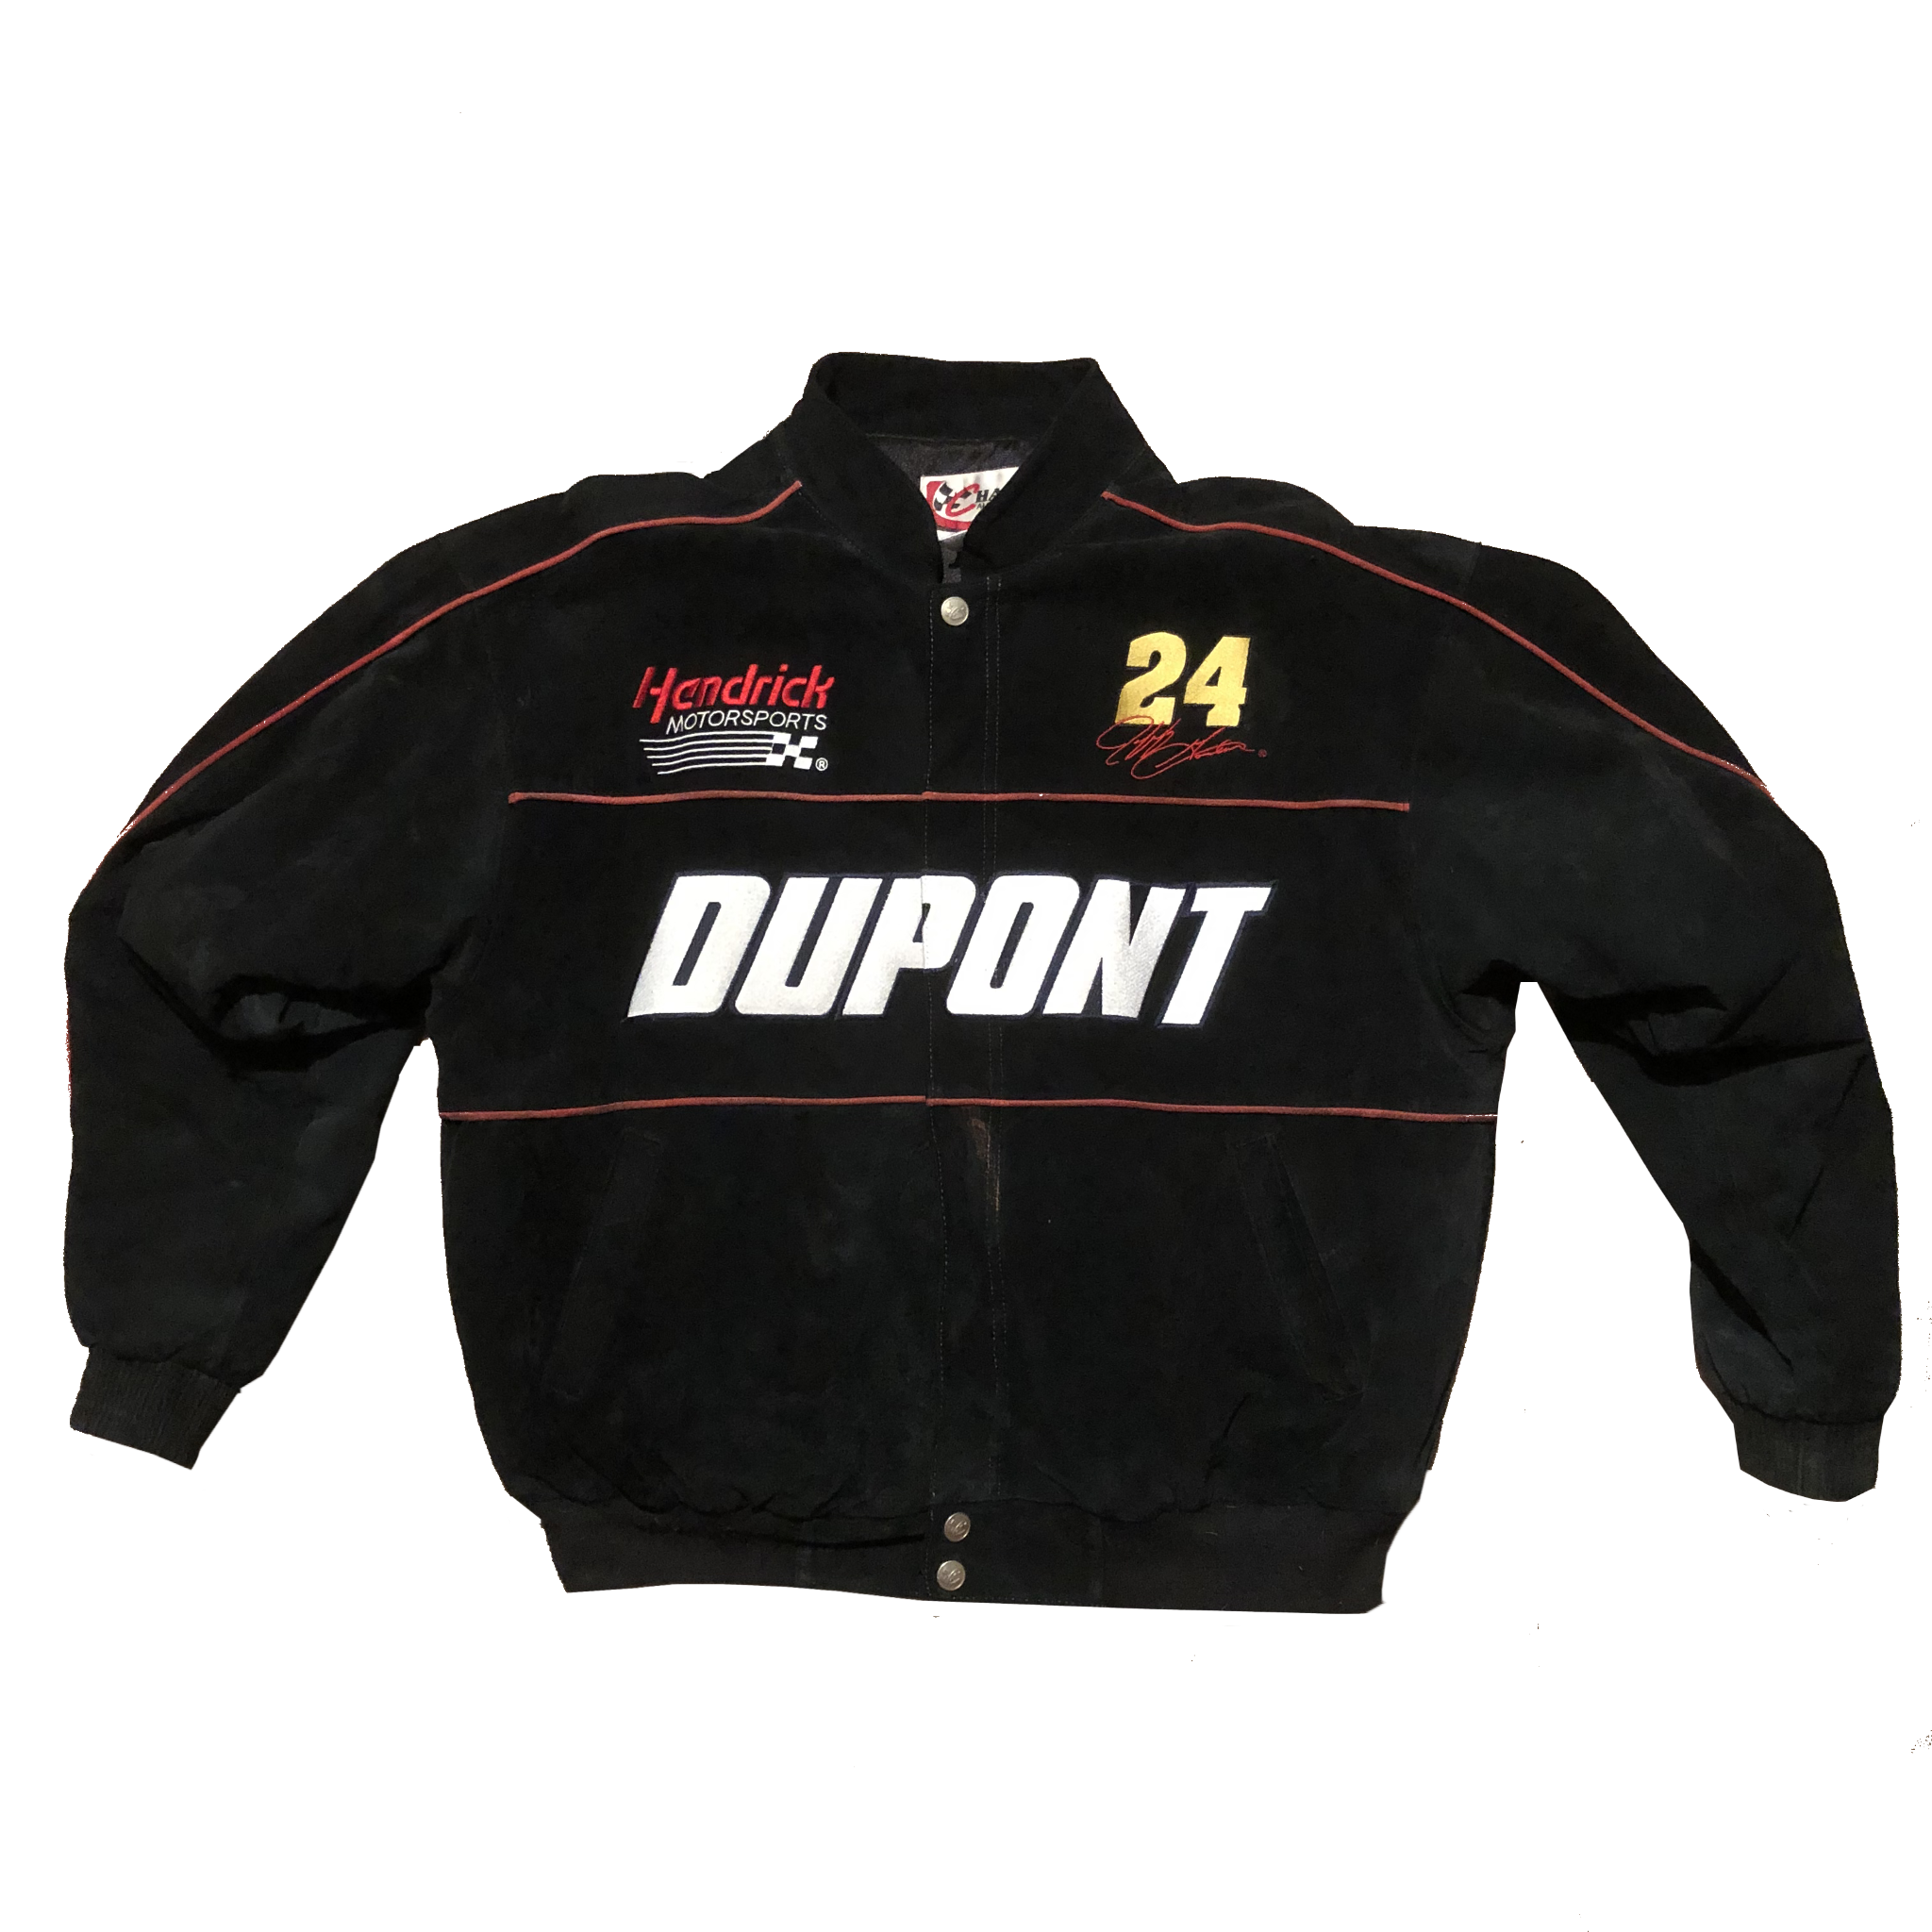 Vintage Jeff Gordon Nascar Dupont Racing Jacket Black Size X-Large - Beyond 94